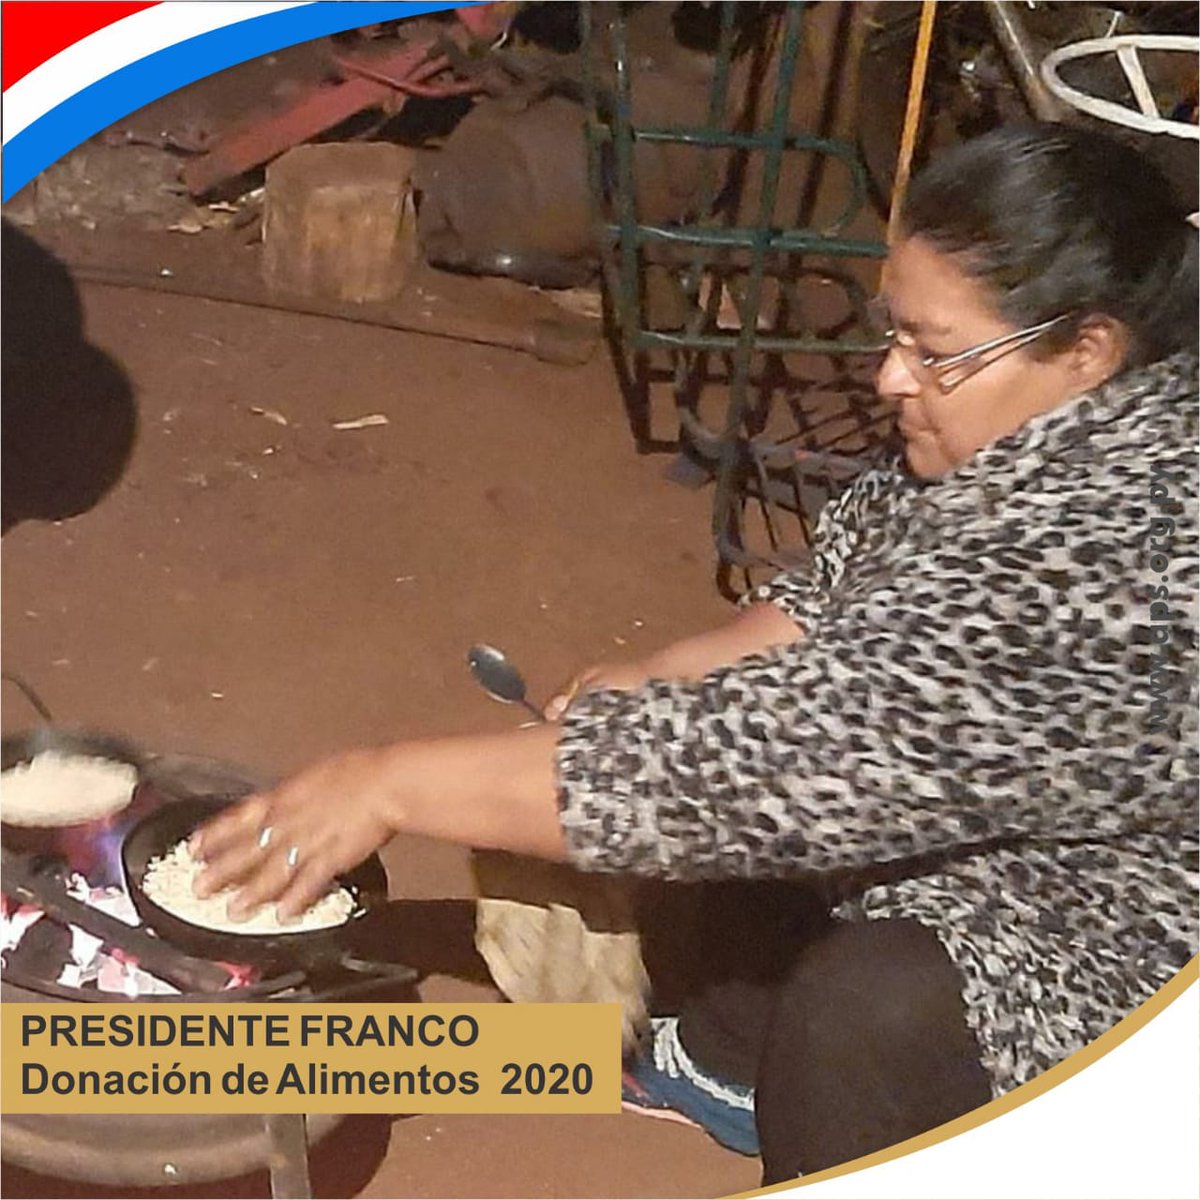 MBEJU 💪🏼😋
La Señora Margarita Gauto estaba preparando mbeju con gabazo de soja.👩🏻‍🍳
En la Olla Popular del km 5 Monday de Presidente Franco

#FuerzaParaguay #DonaciónDeAlimentos #ollapopularpy #ElCampoNoPara 👩🏻‍🌾👨🏻‍🌾 #merienda #DonaciónSoja